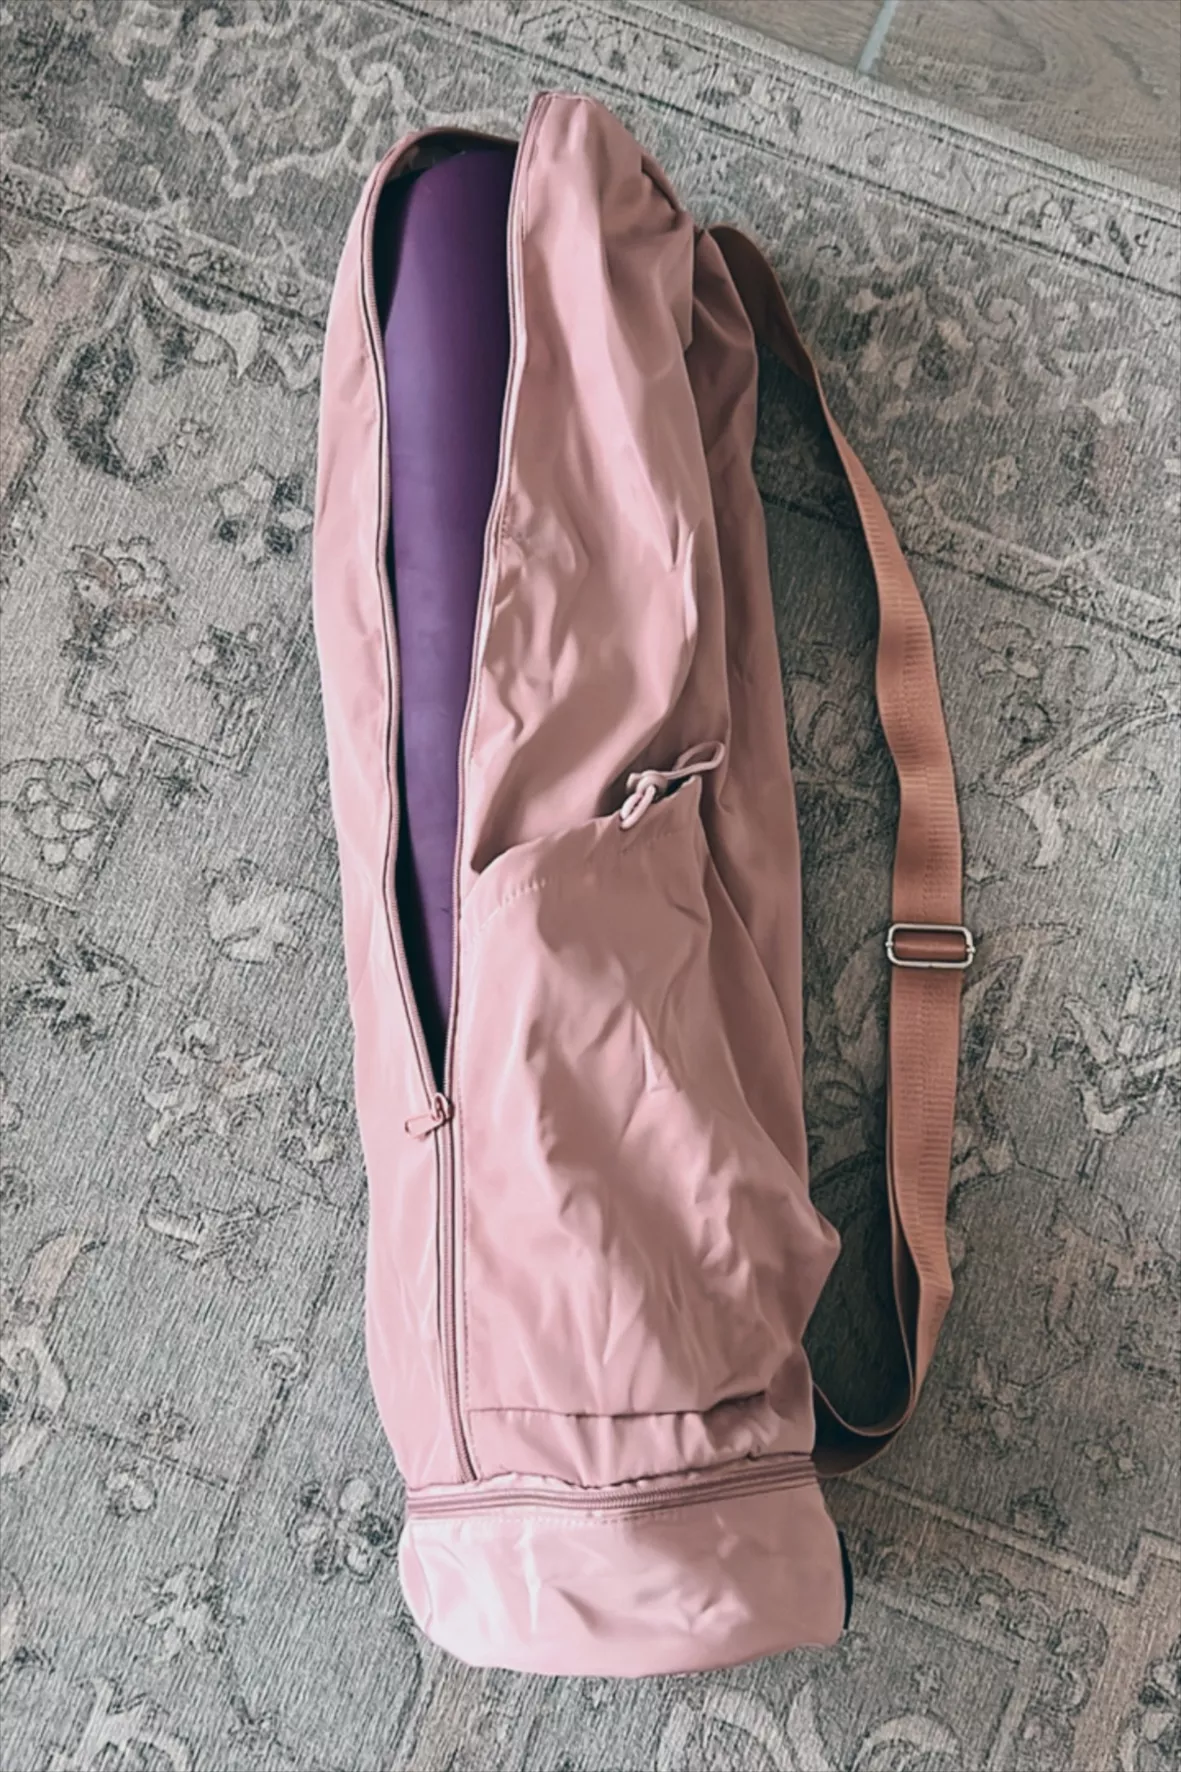 The Yoga Mat Bag